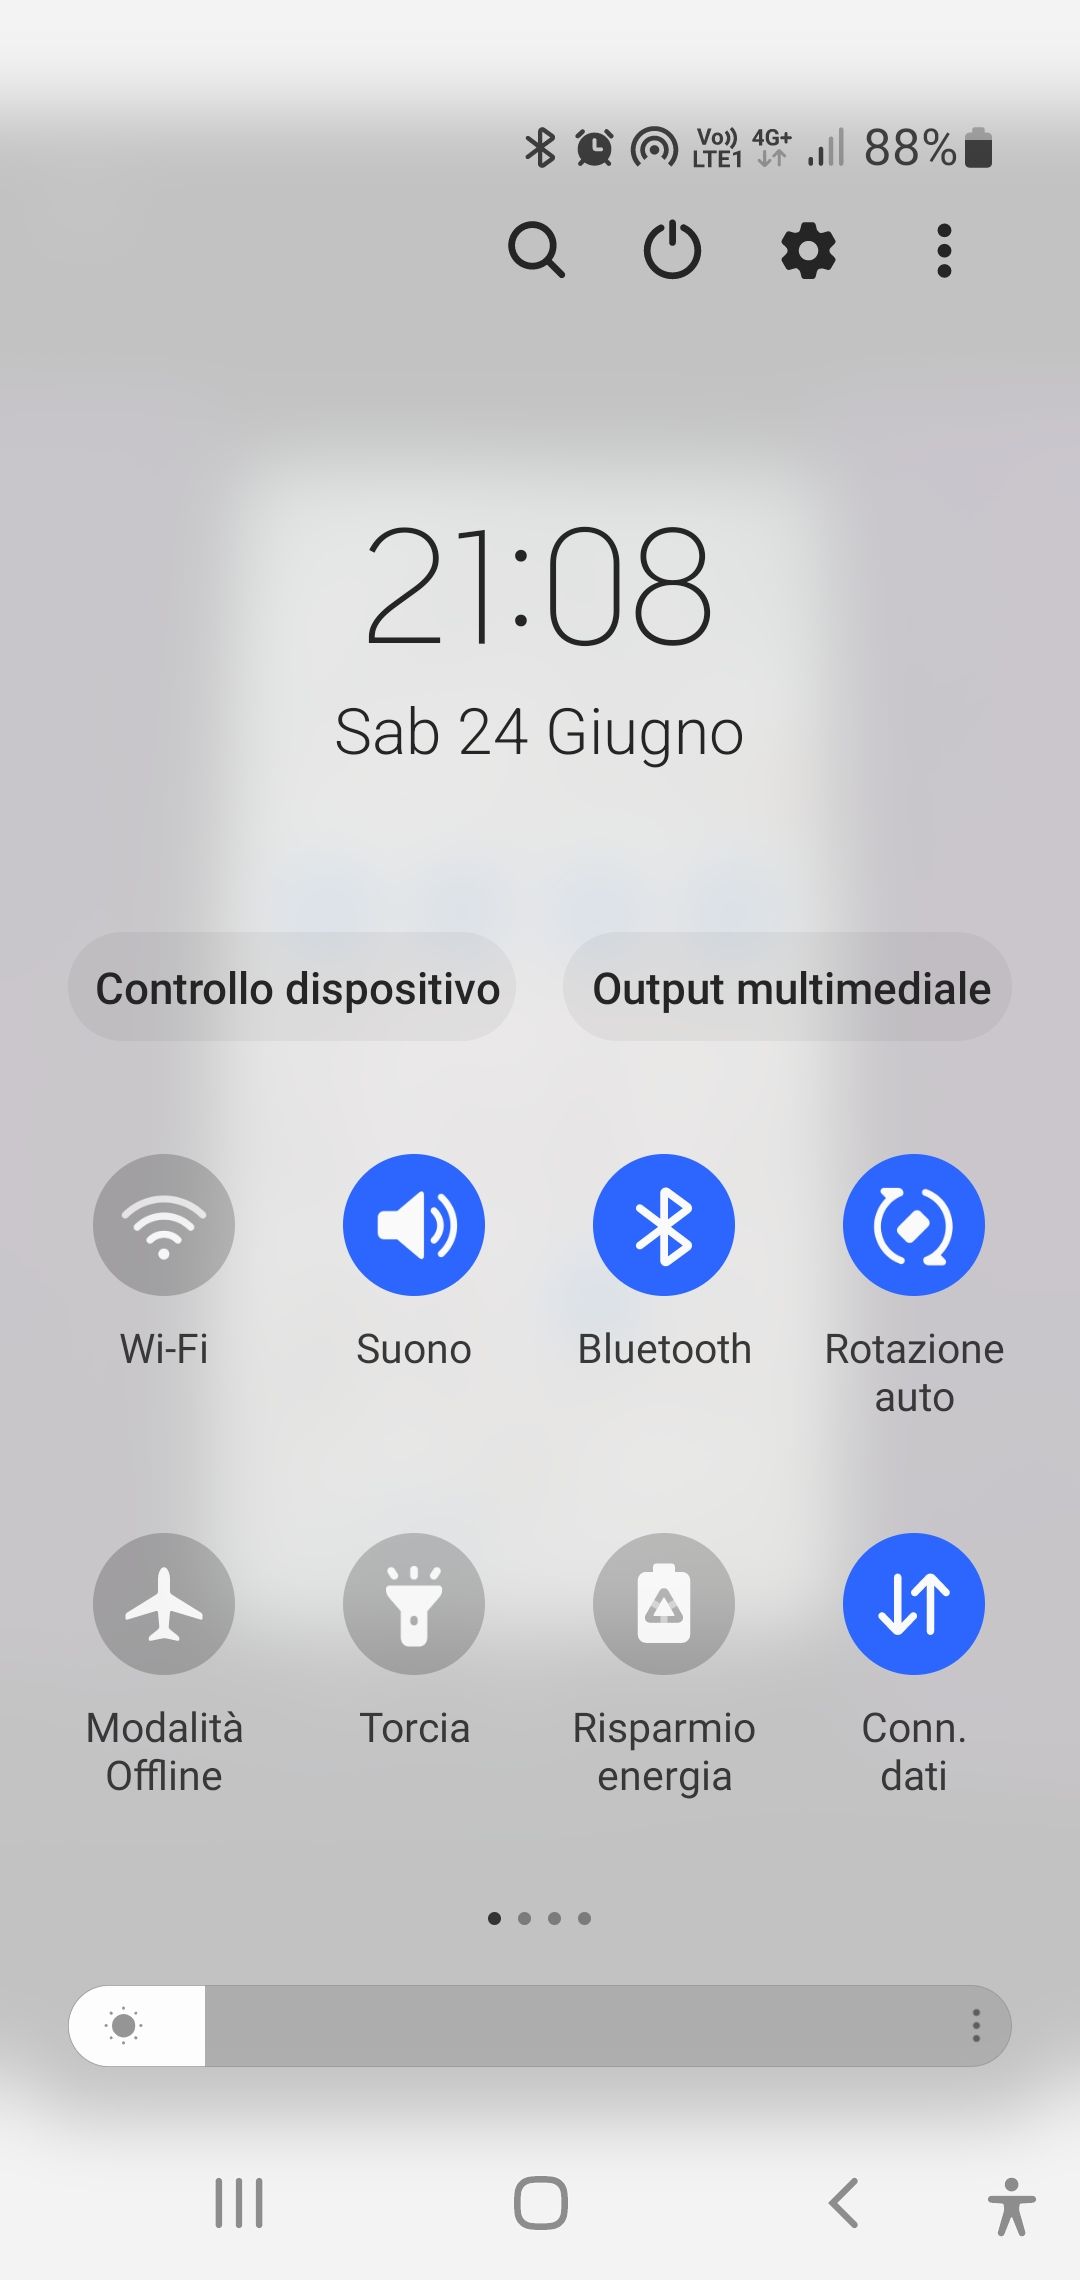 Modificare disposizione icone nel menu a tendina della schermata home -  Samsung Community